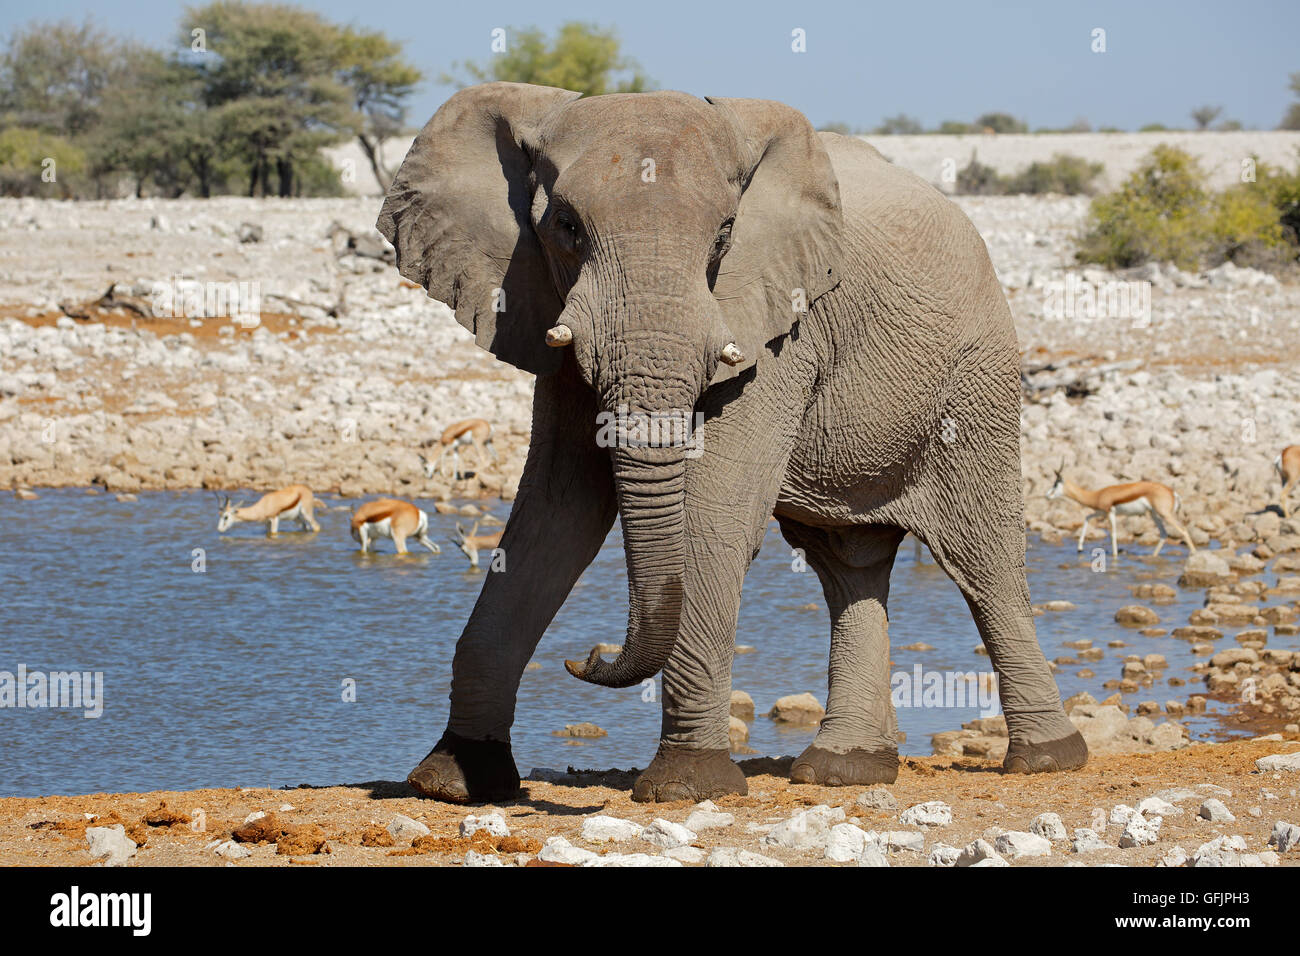 Large African bull elephant (Loxodonta africana) at a waterhole, Etosha National Park, Namibia Stock Photo